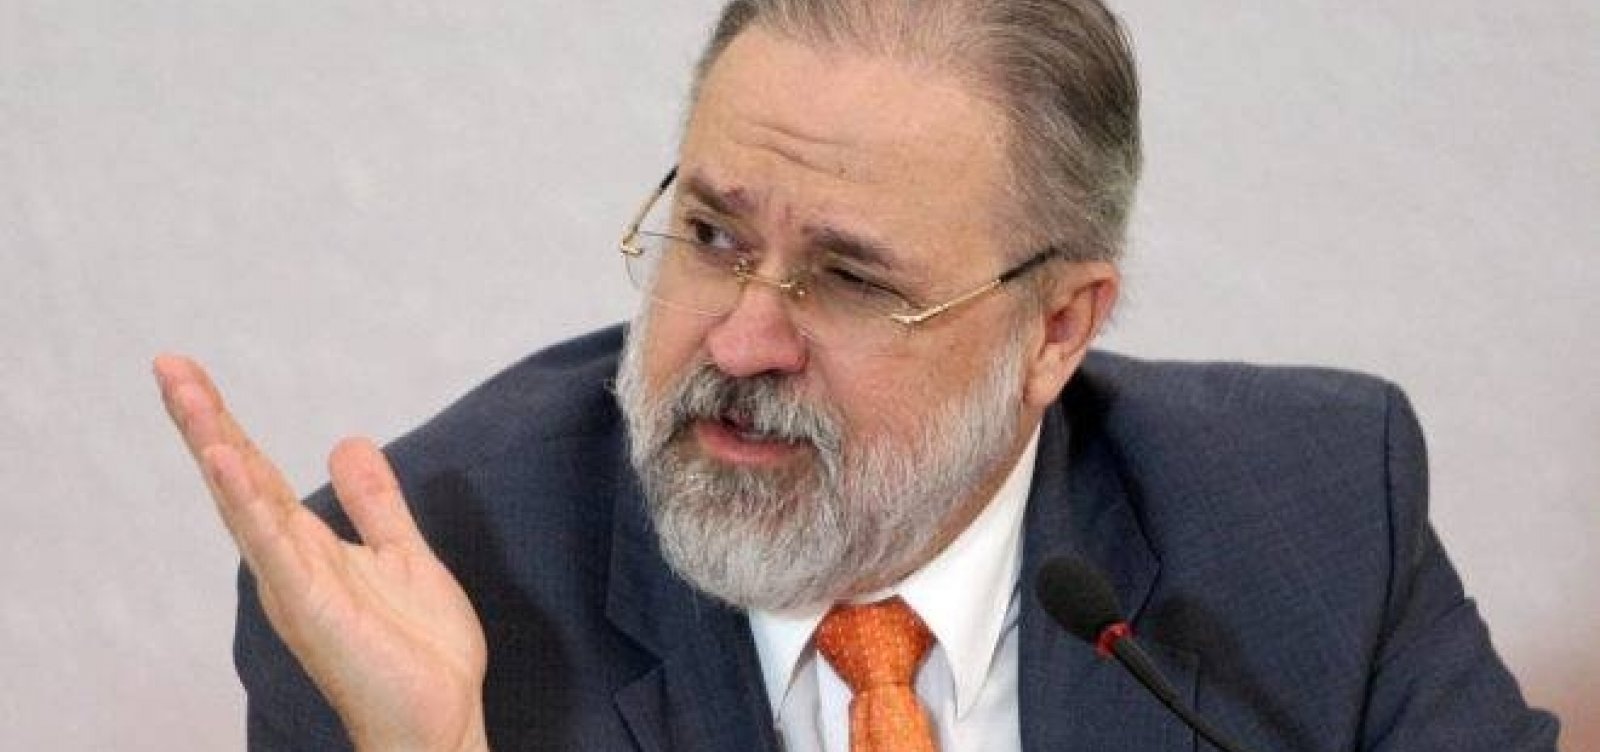 Procurador-geral solicita ao STF investigação das ações de Pazuello diante do colapso em Manaus